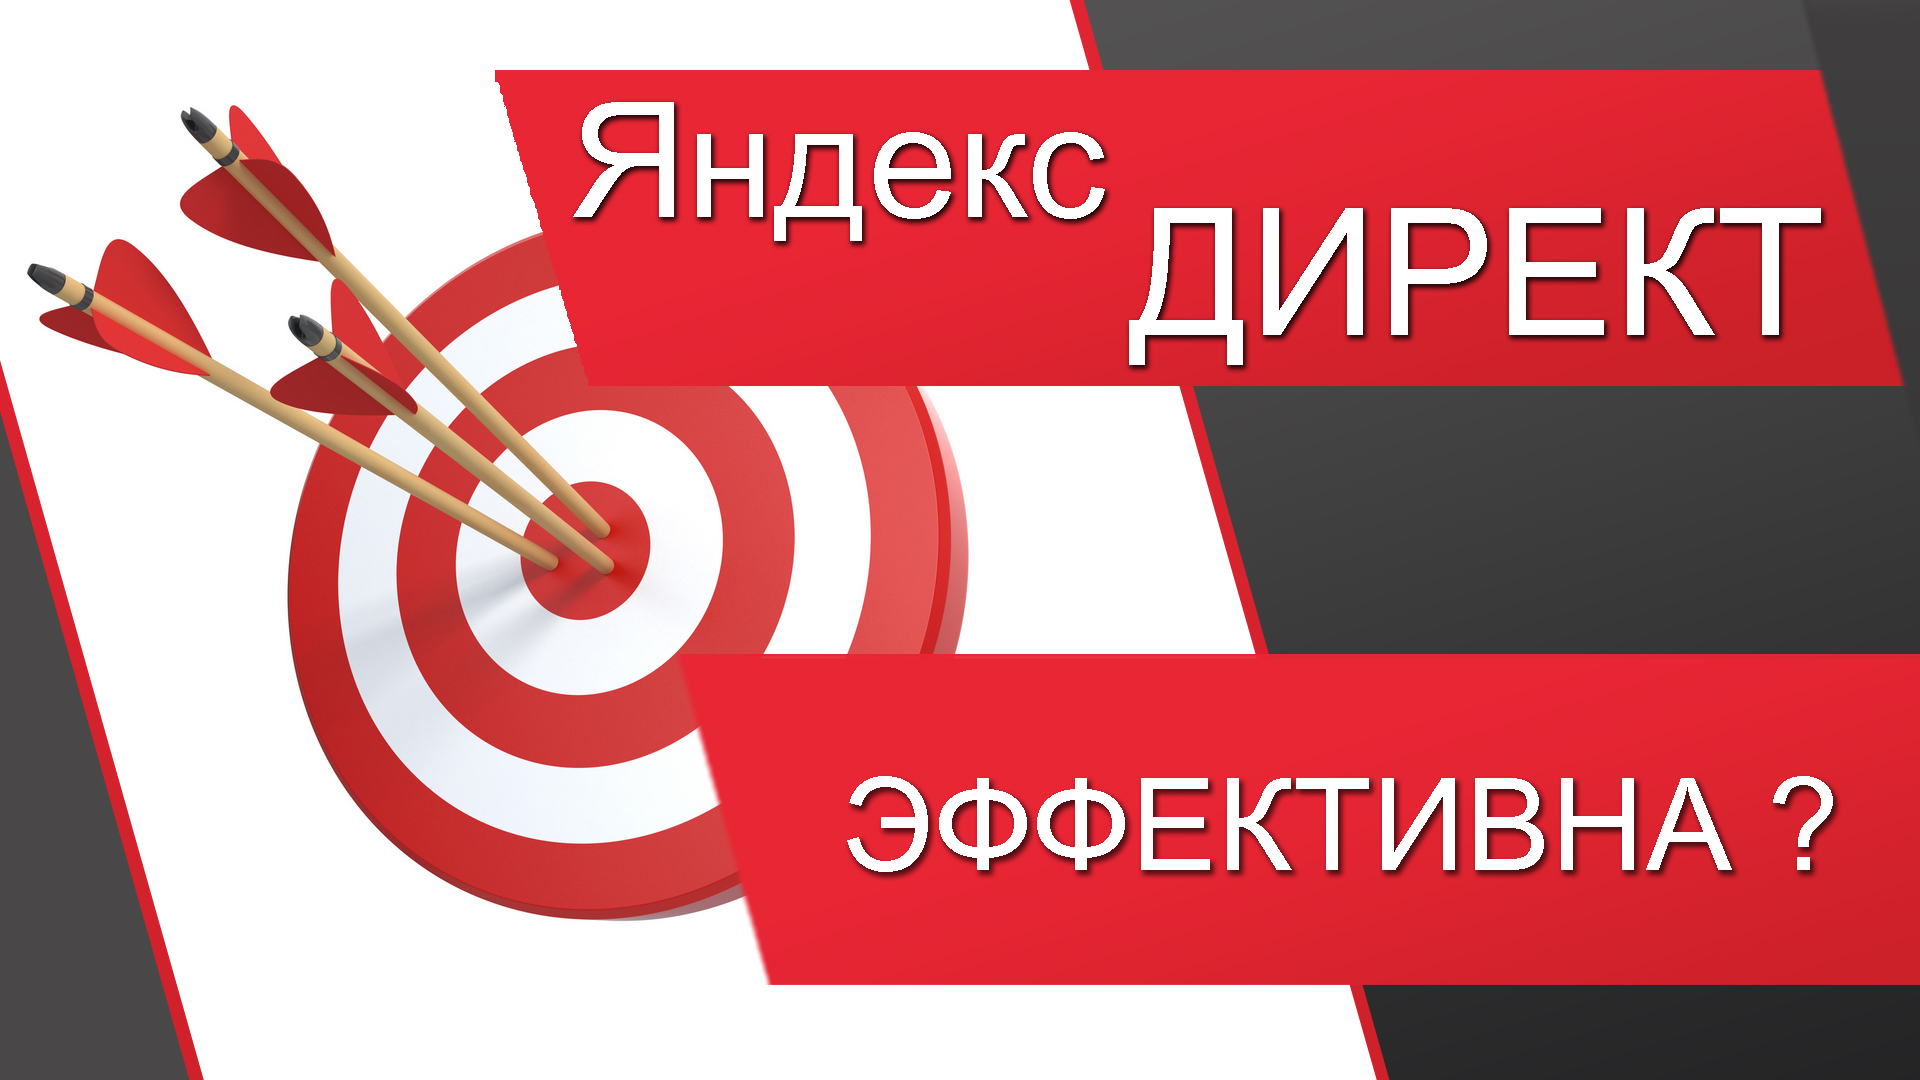 Яндекс Директ (контекстная реклама, раскрутка сайта, как найти клиентов)